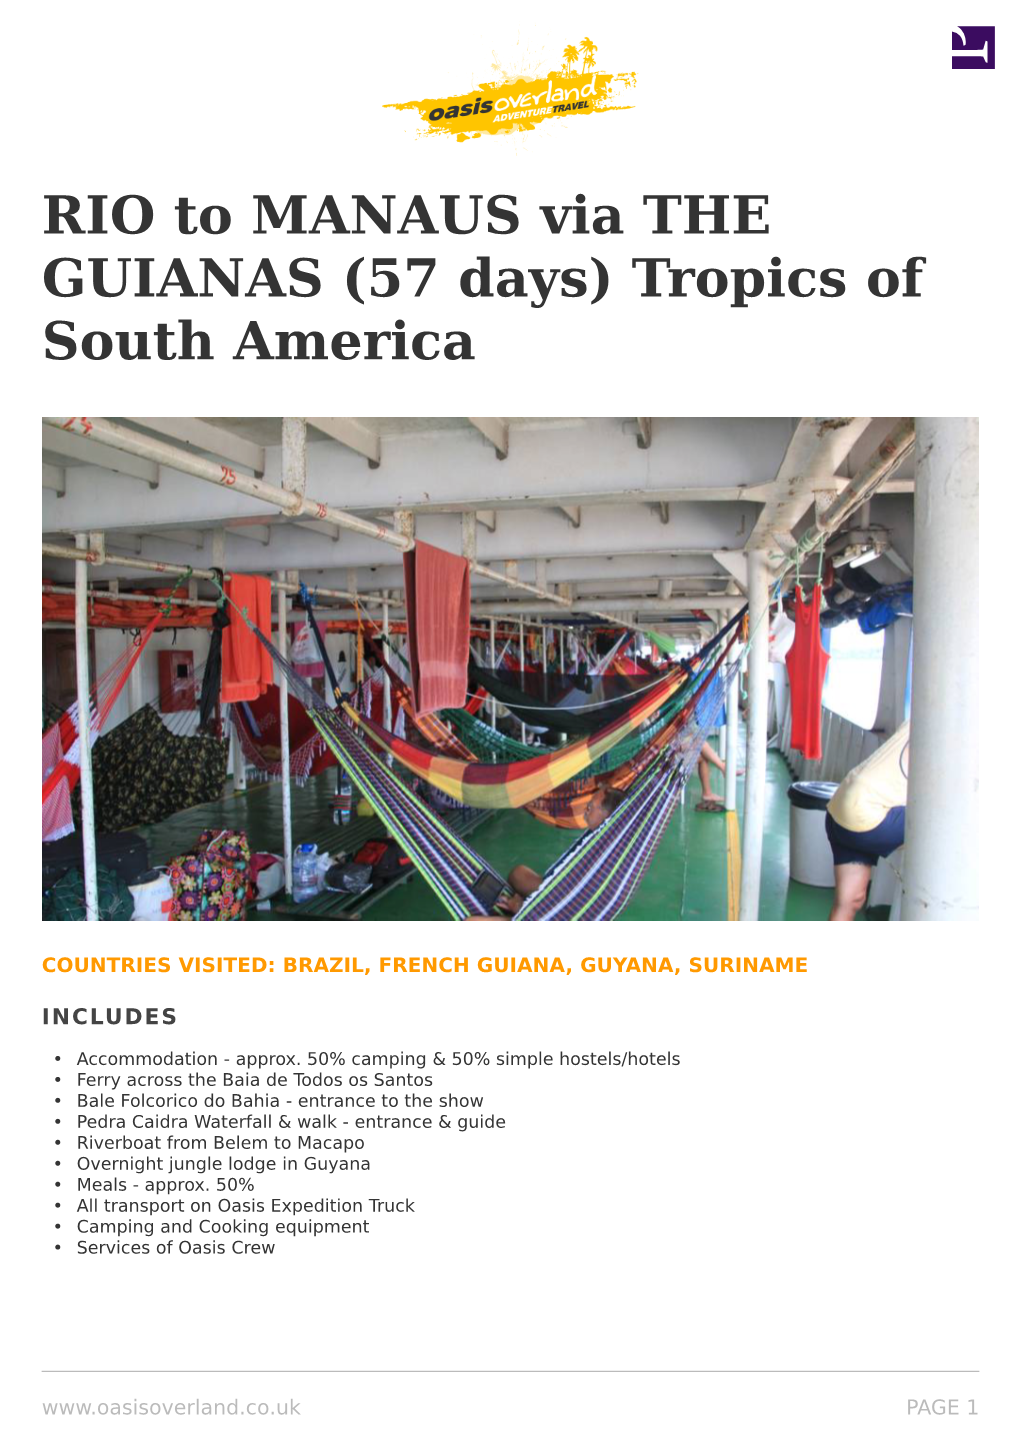 RIO to MANAUS Via the GUIANAS (57 Days) Tropics of South America